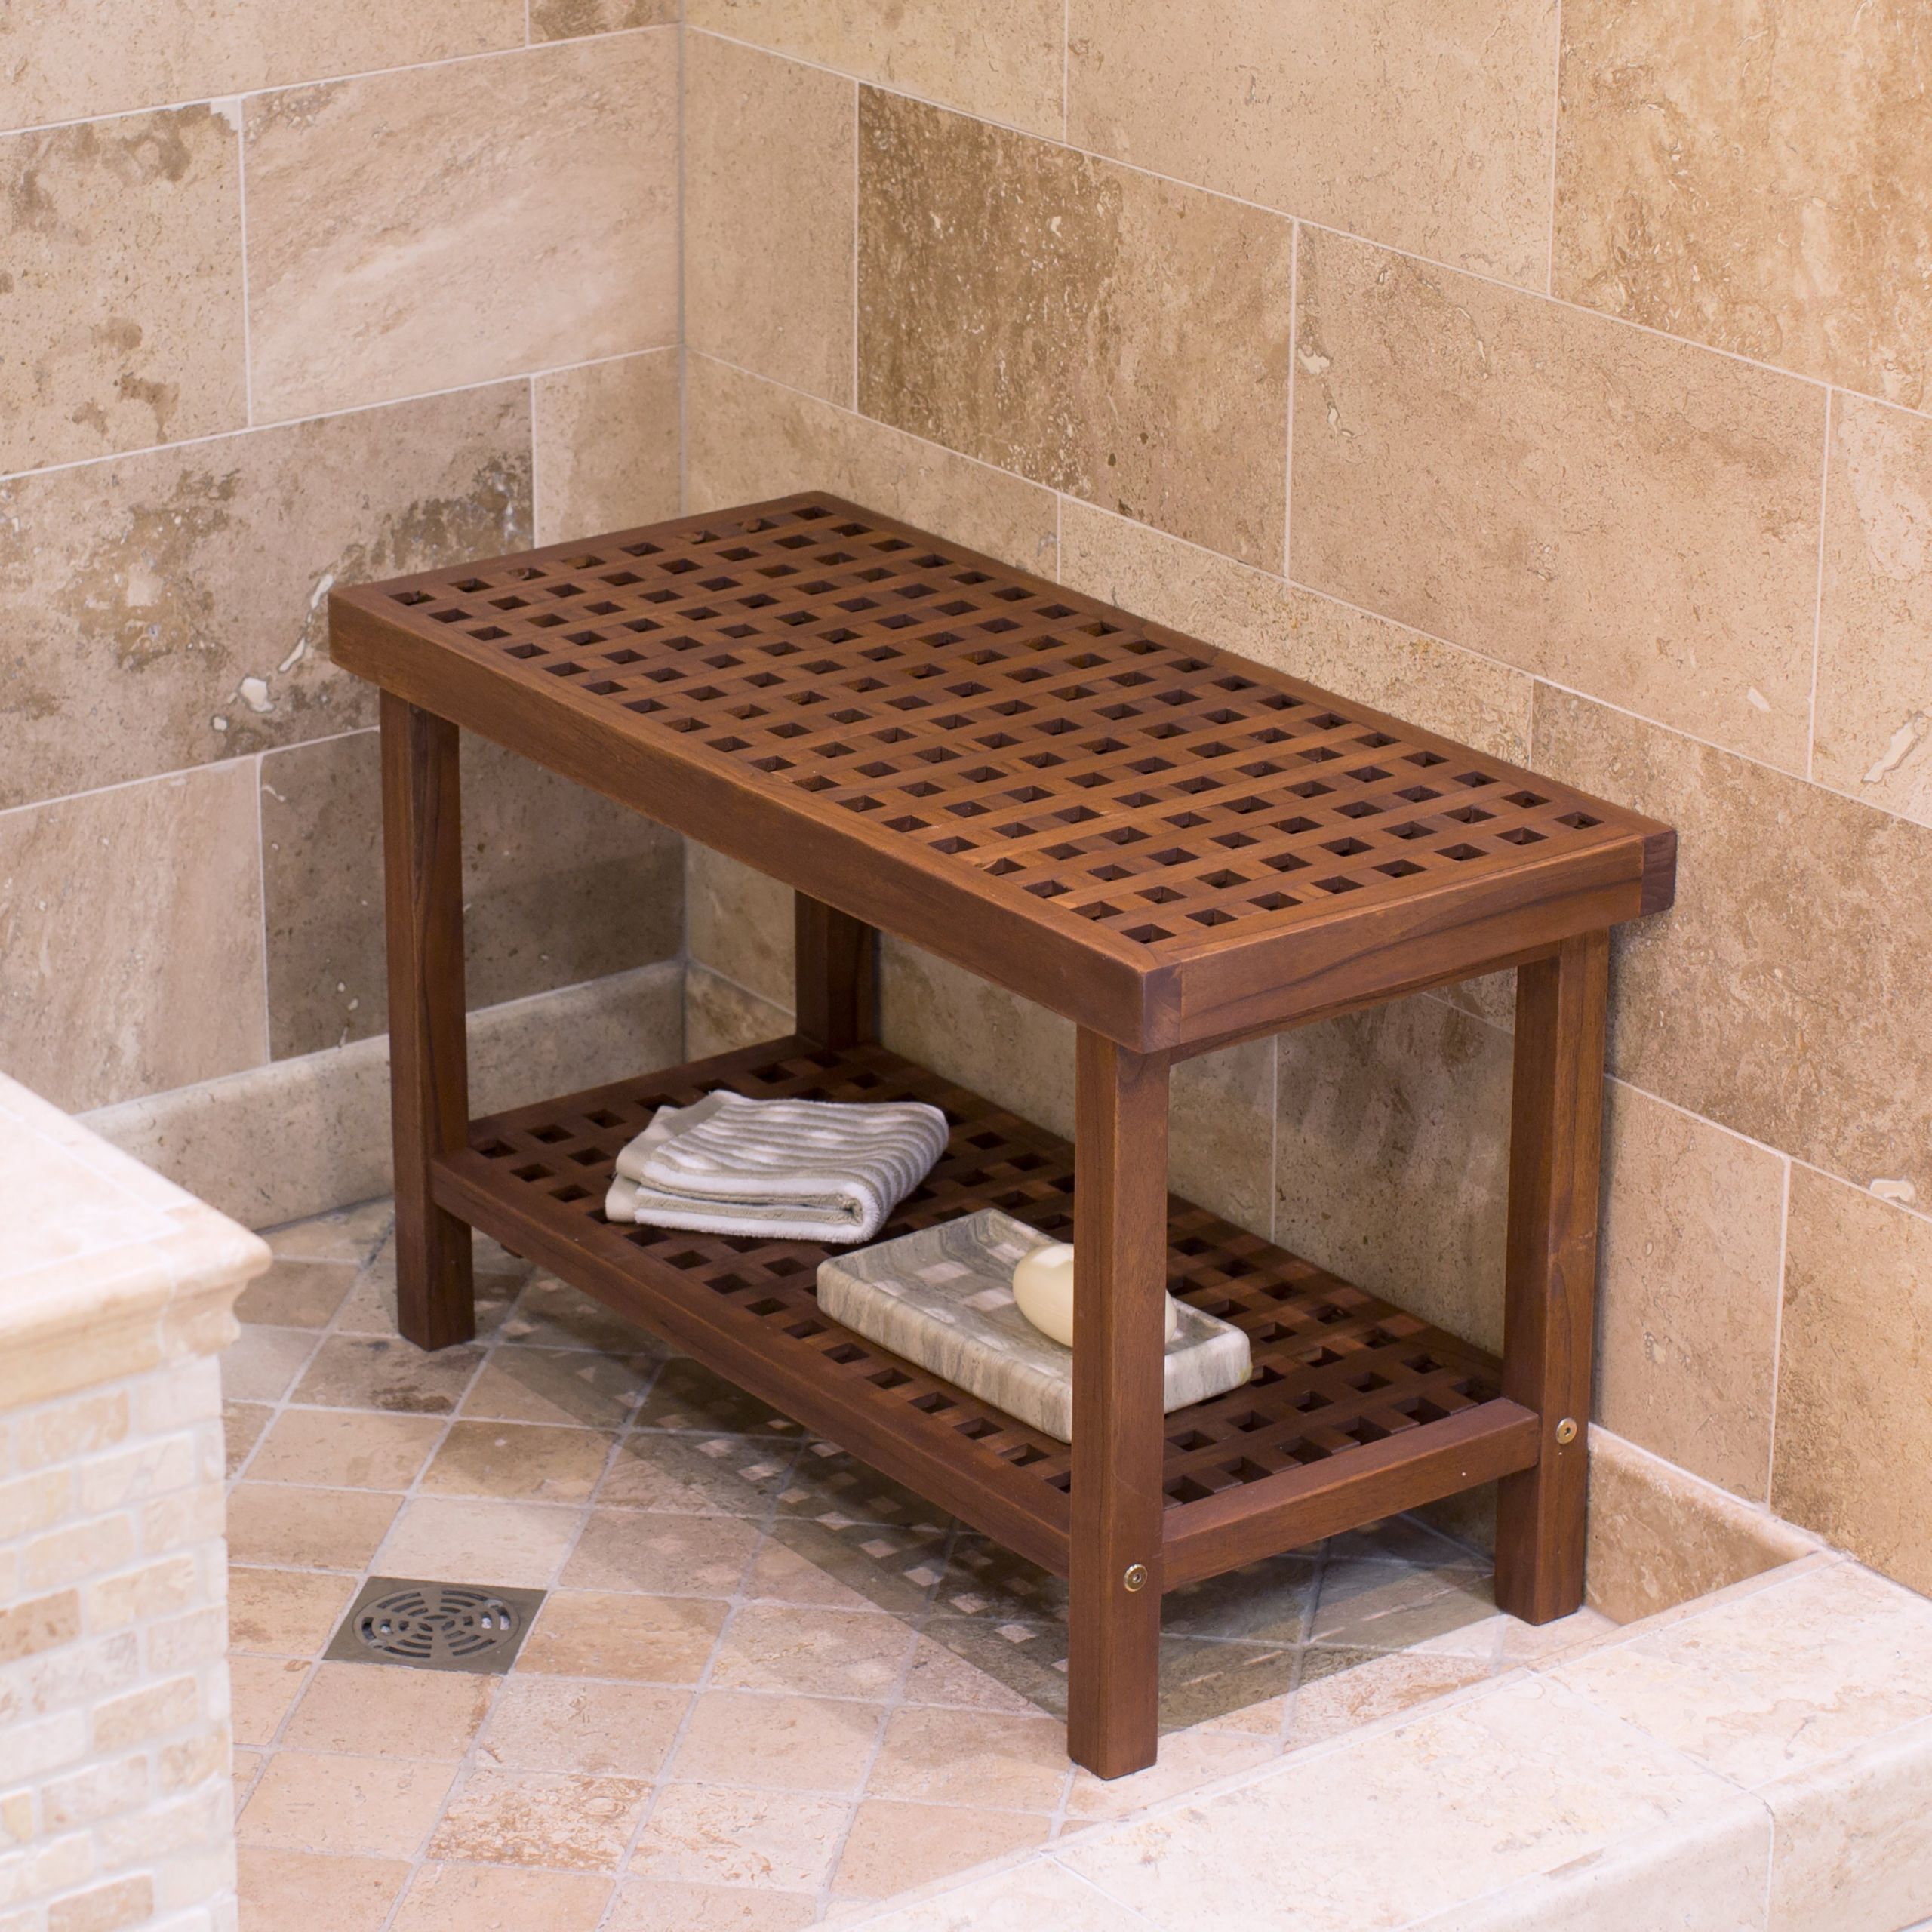 Small Bench For Bathroom
 Belham Living Lattice Teak Shower Bench Bathtub & Shower